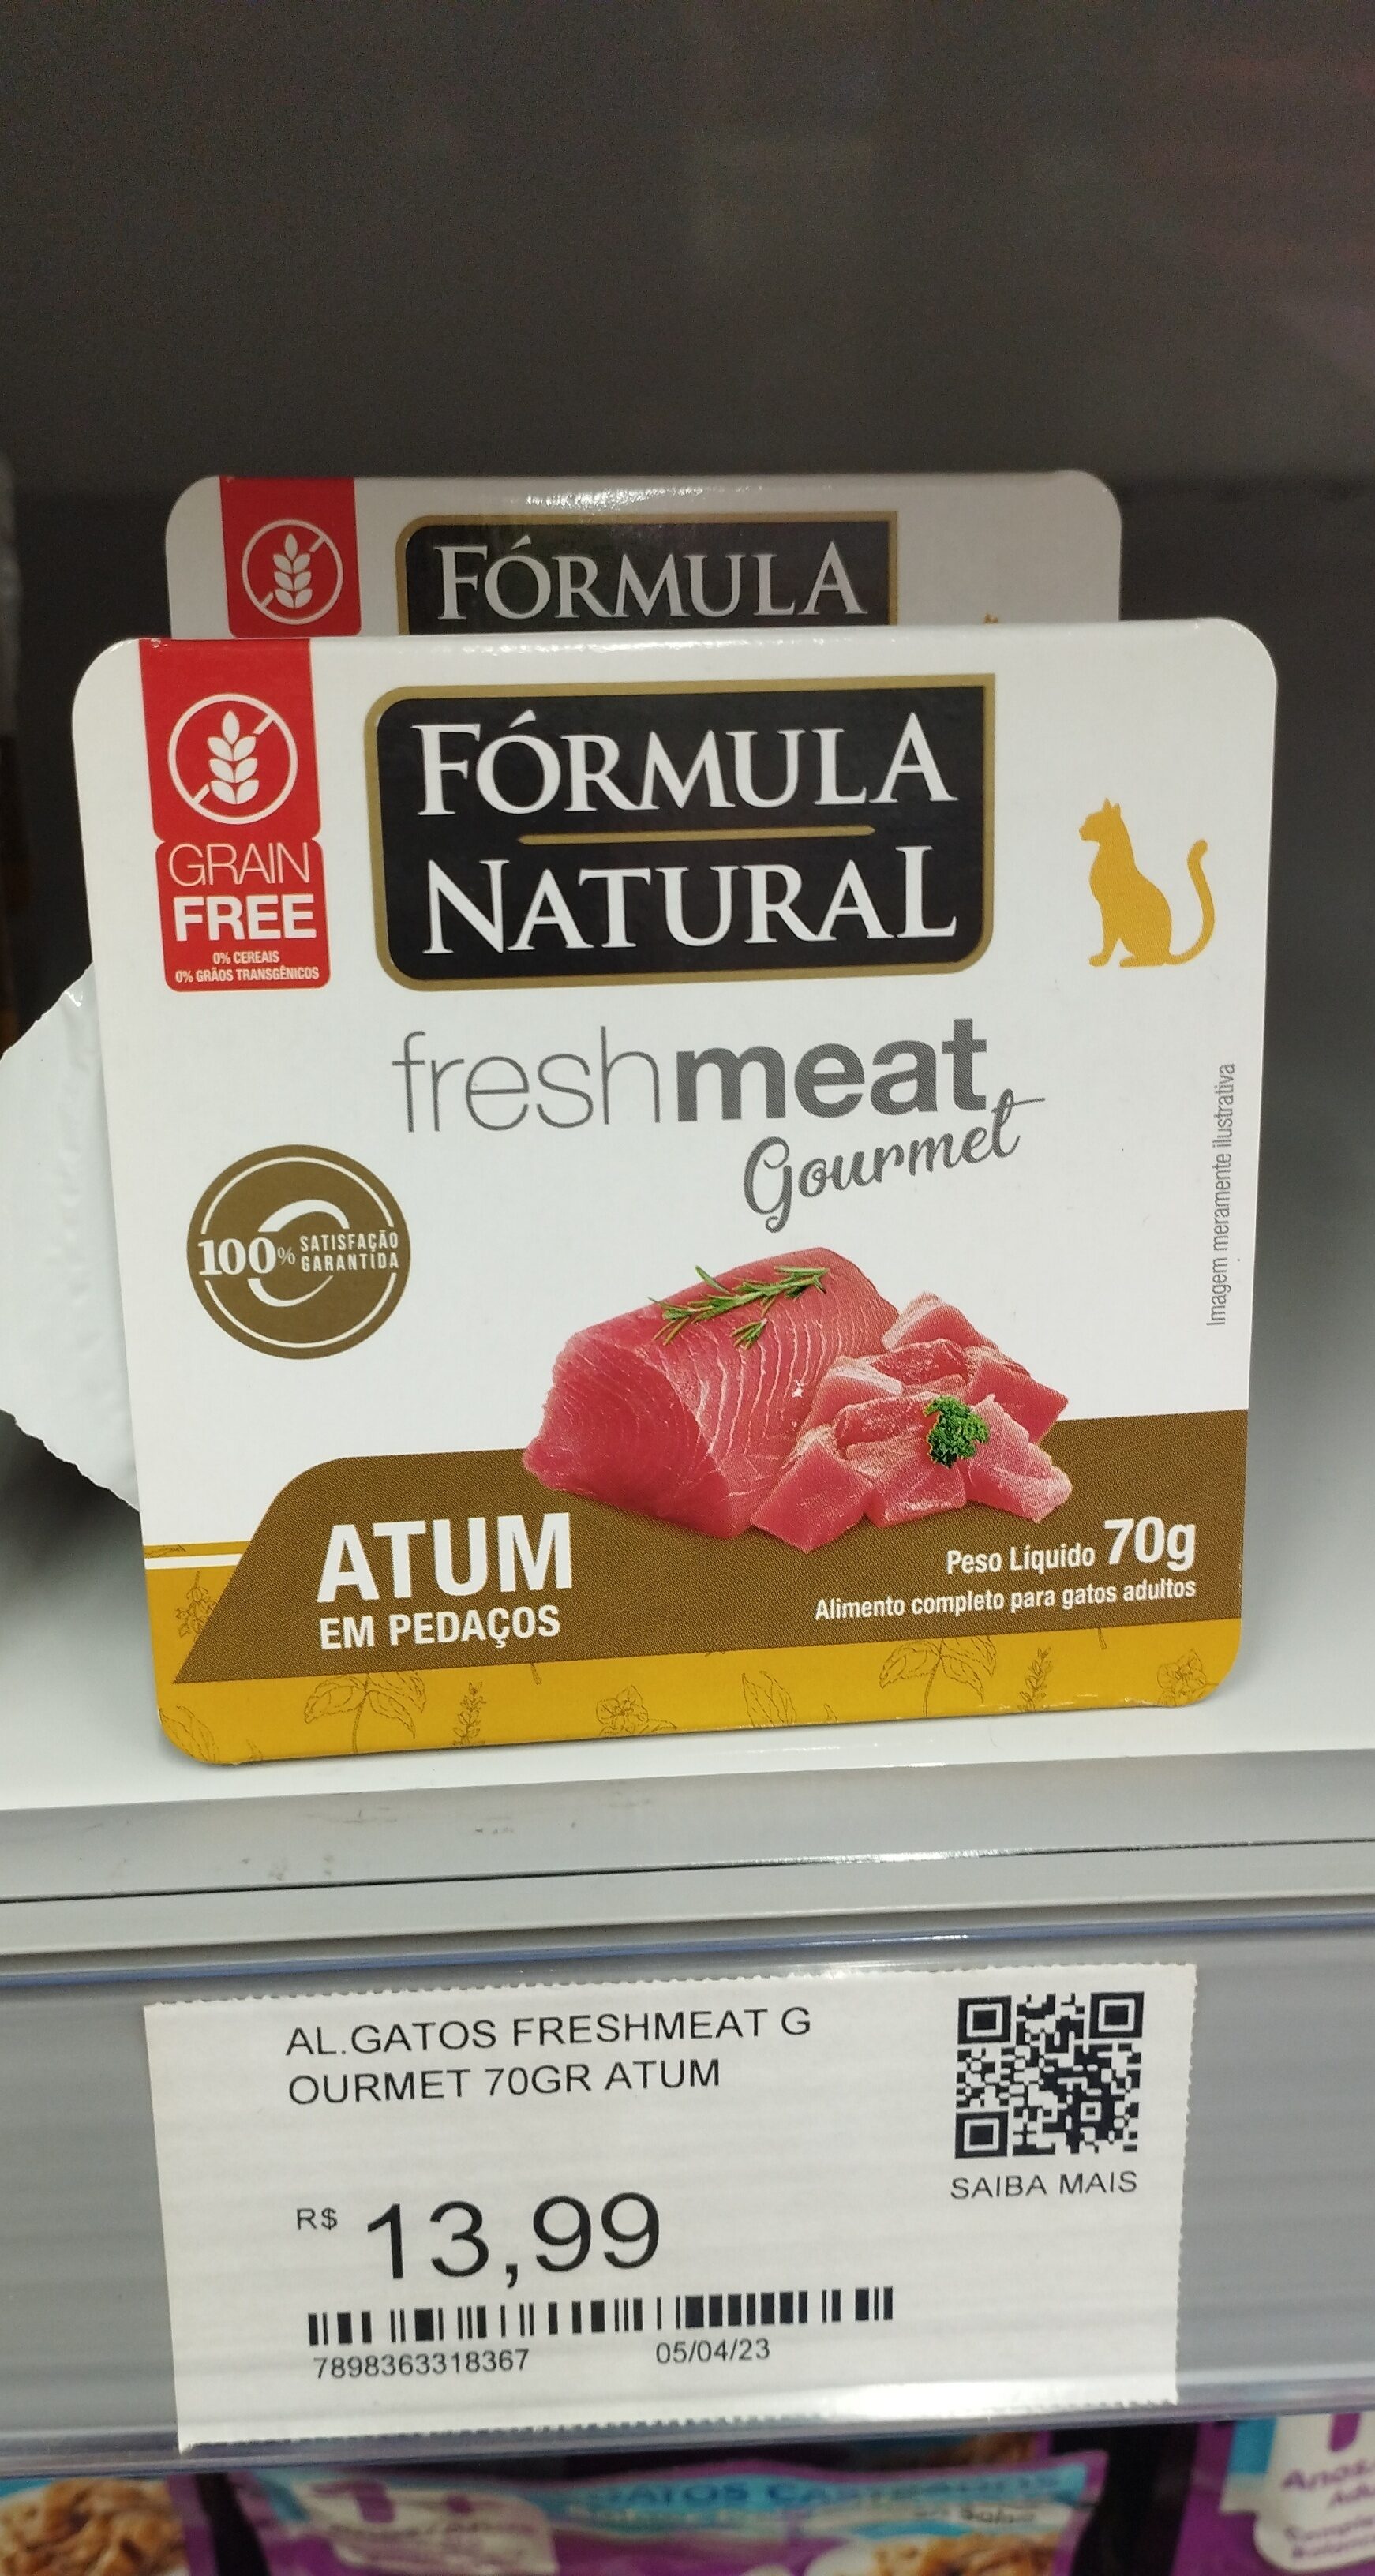 Fresh meat atum - Product - pt